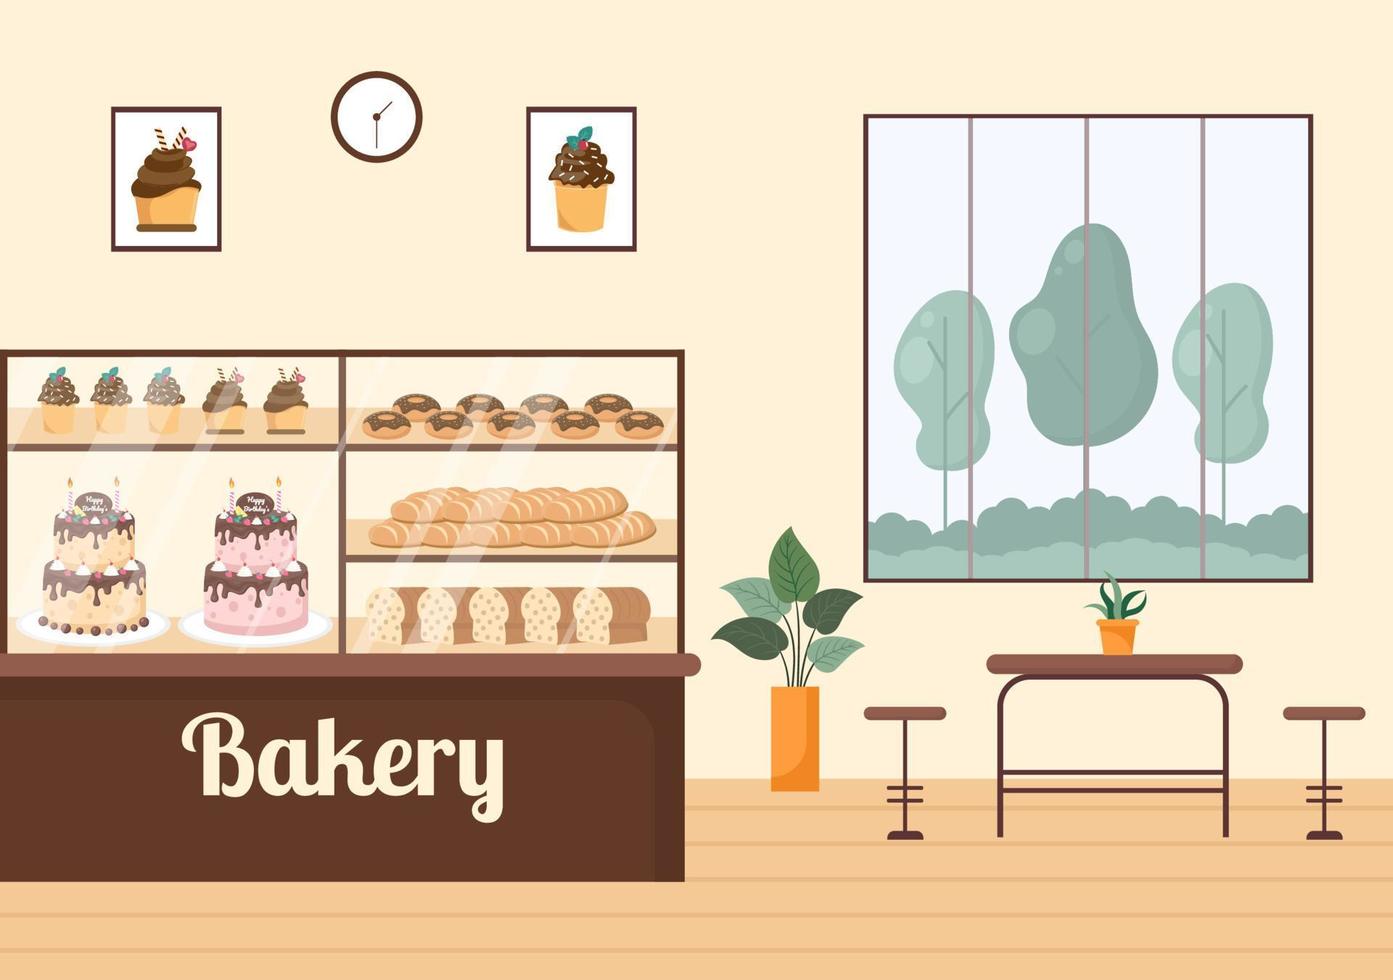 edificio de panadería que vende varios tipos de pan, como pan blanco, pastelería y otros, todos horneados en un fondo plano para ilustrar afiches vector